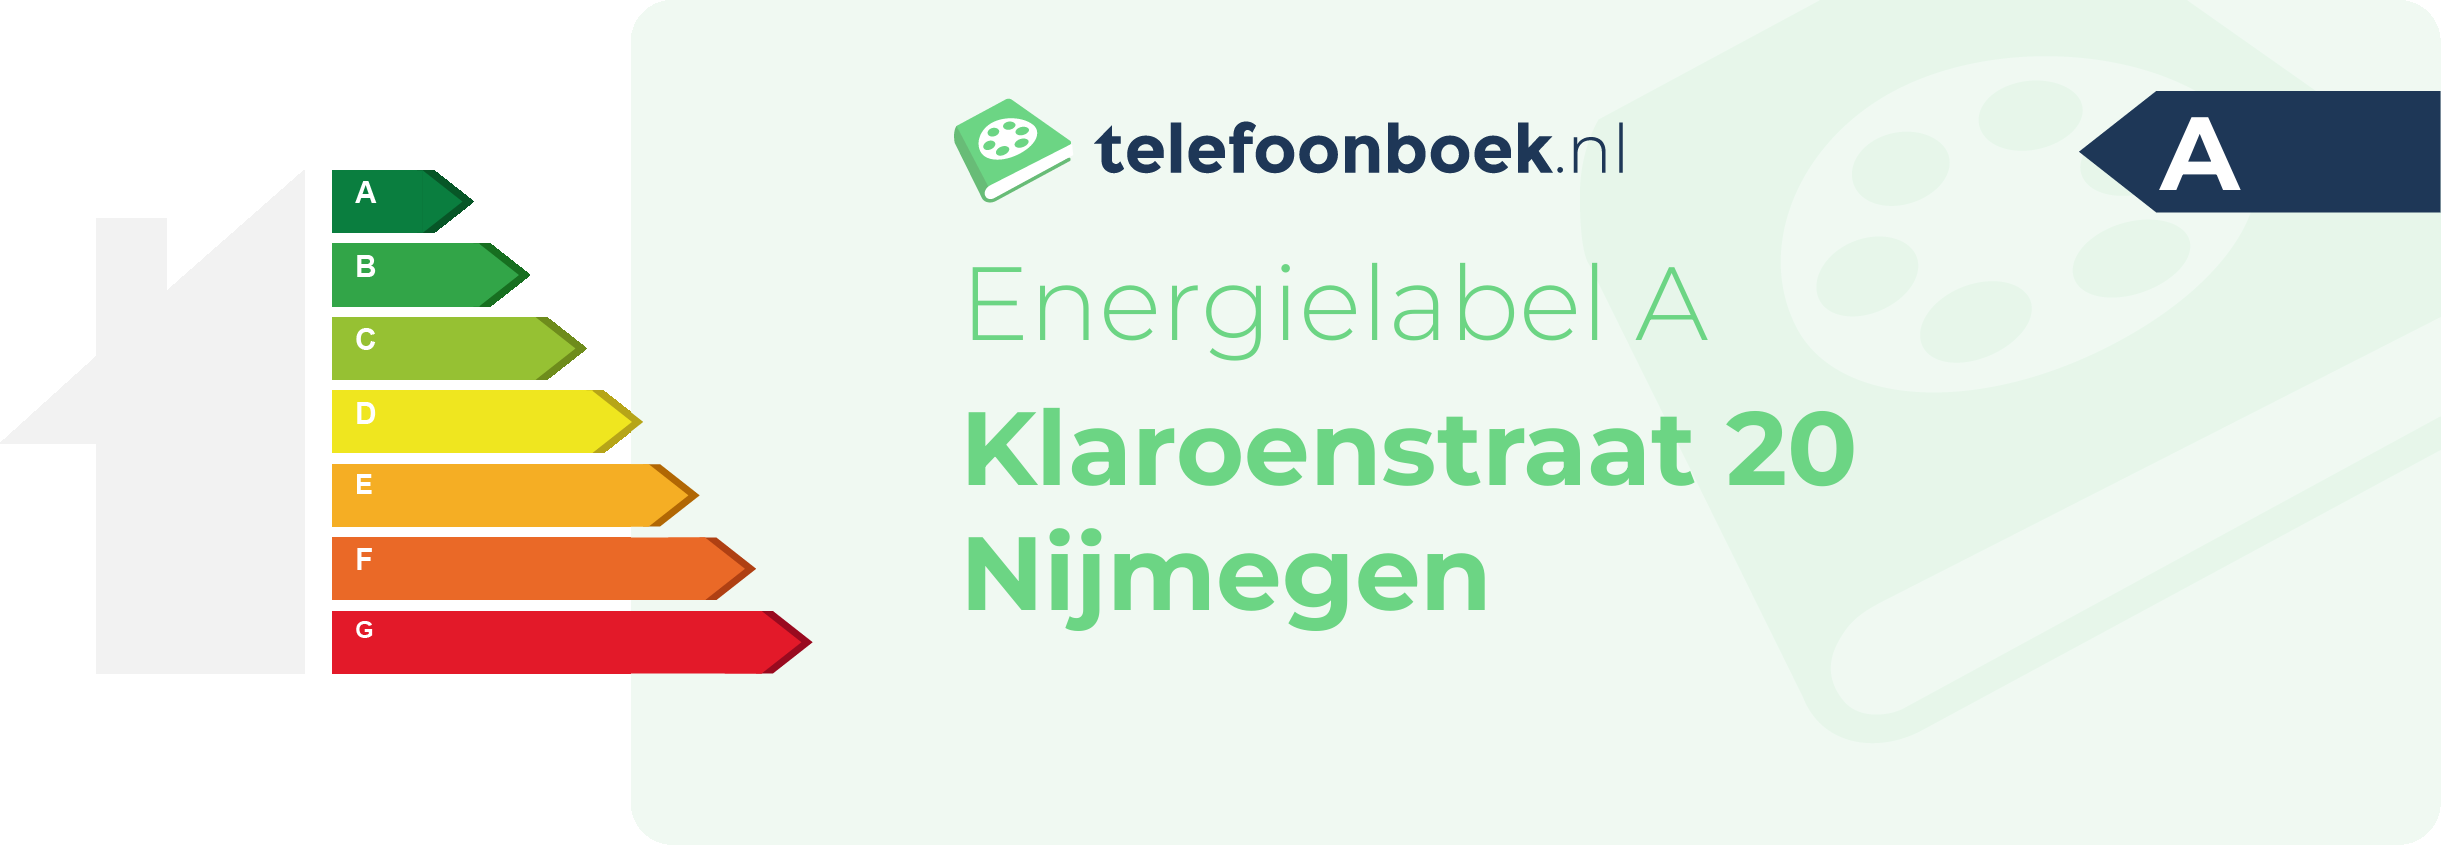 Energielabel Klaroenstraat 20 Nijmegen